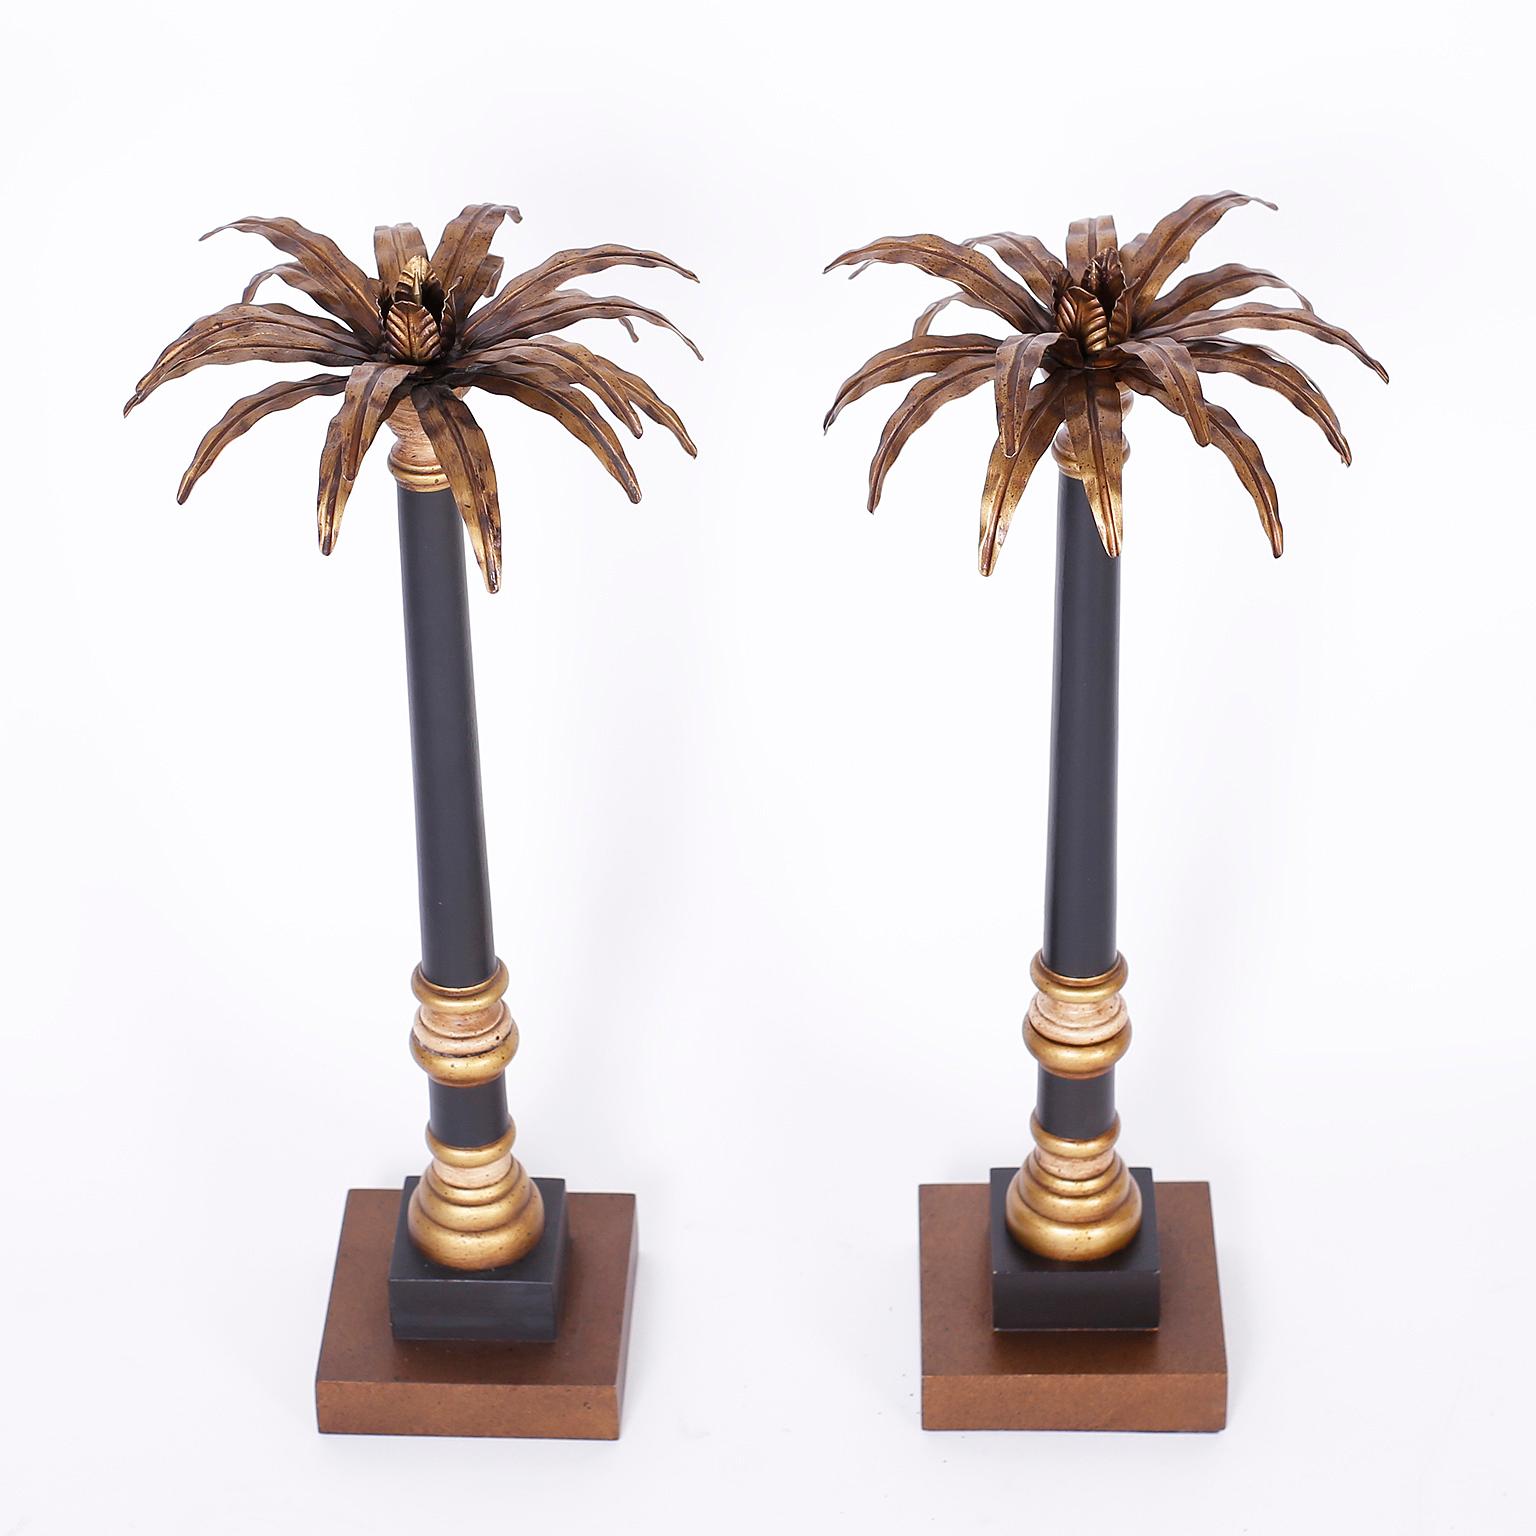 Paar neoklassische italienische Kerzenständer mit stilisierten Palmenaufsätzen aus Messing und Kerzenhaltern aus gedrechseltem Holz in schwarzer und goldener Farbe mit klassischer Form.